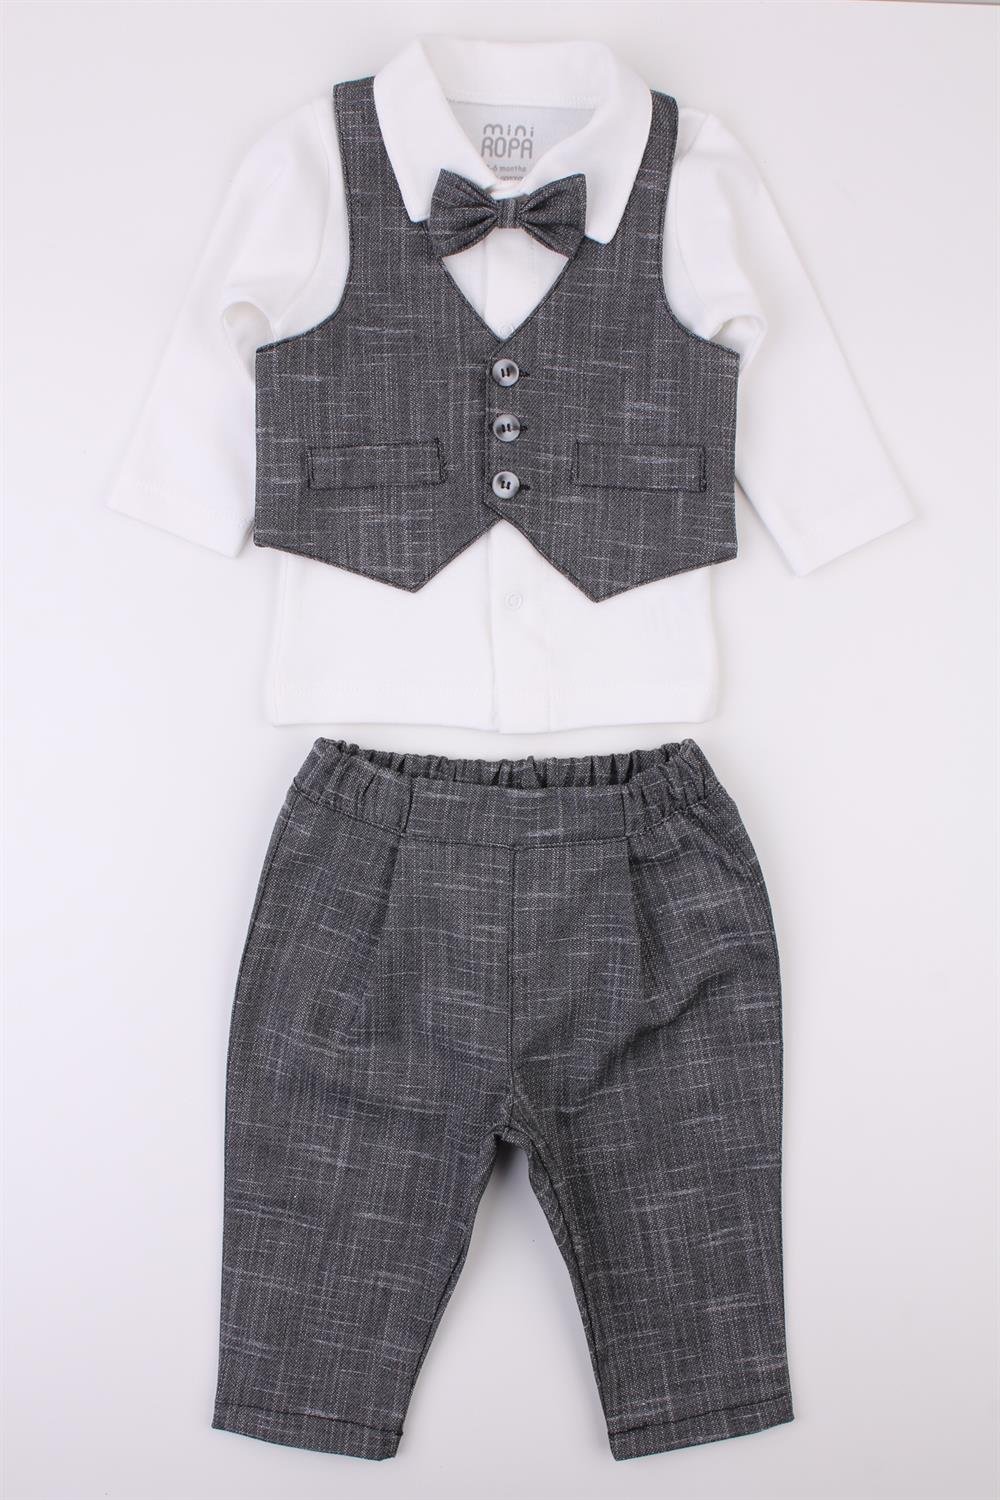 Antrasit Yelekli Erkek Bebek Takım Bebek Takım Elbise Özel Gün Kıyafeti